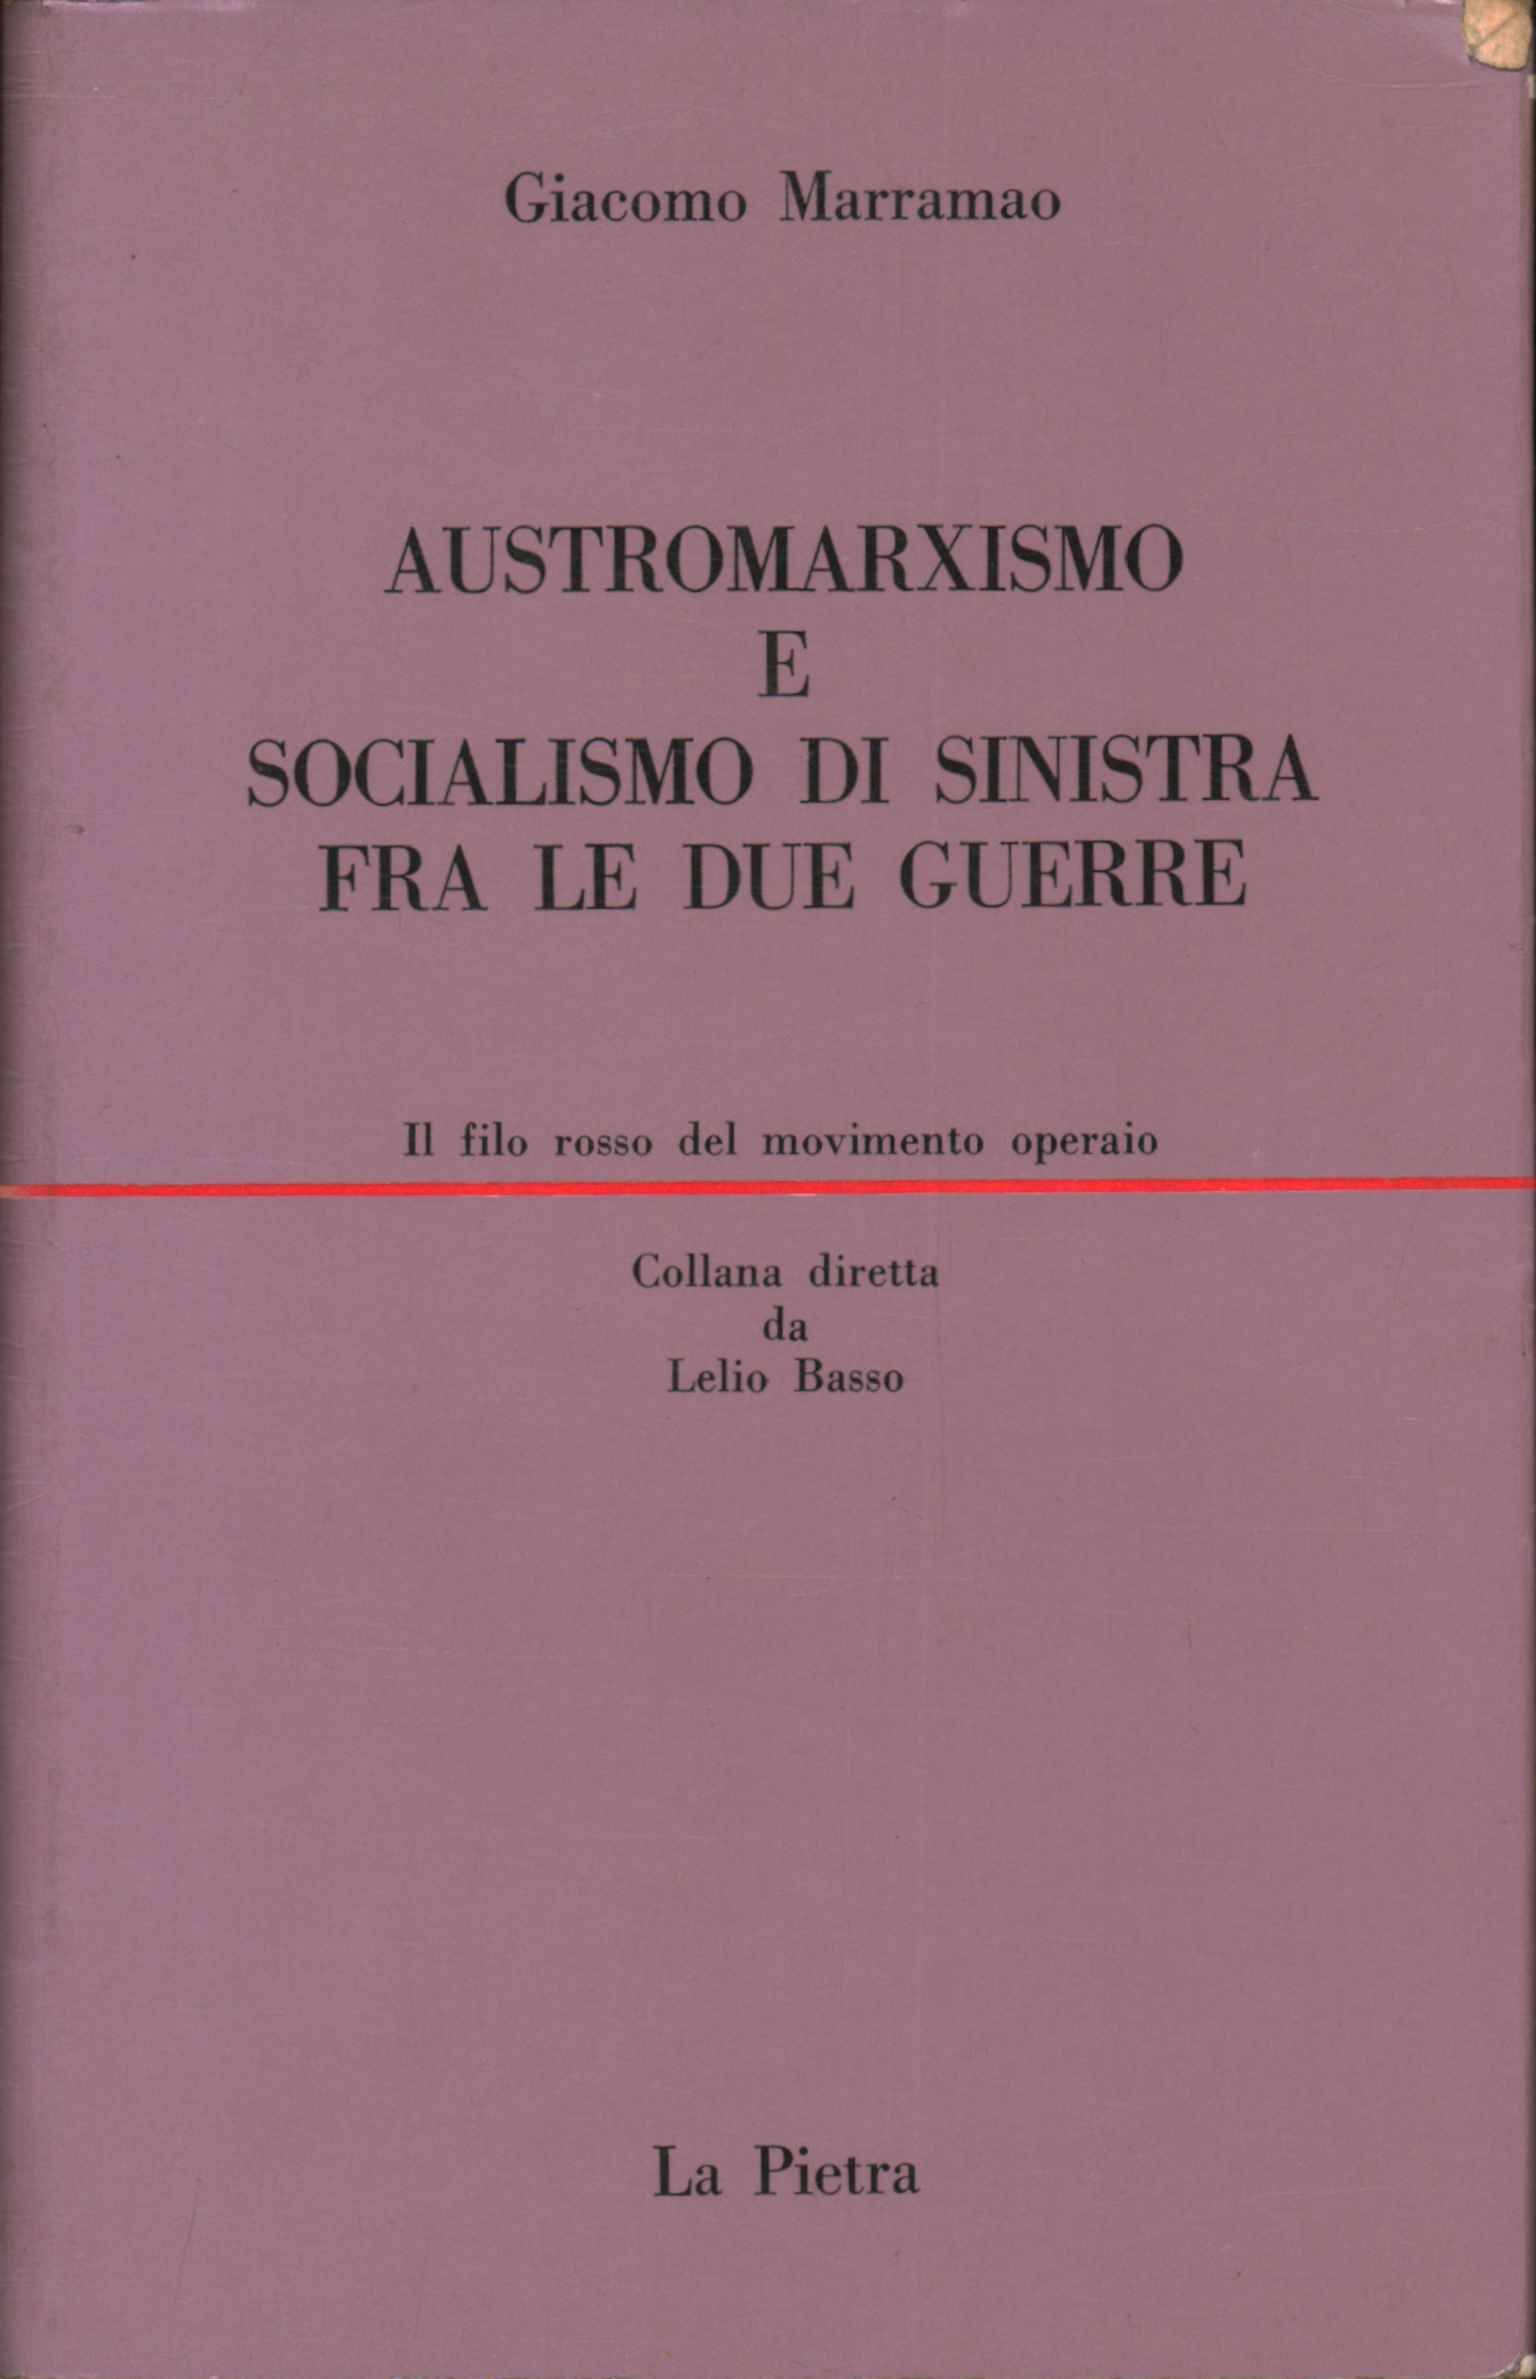 Austromarxismus und Linkssozialismus